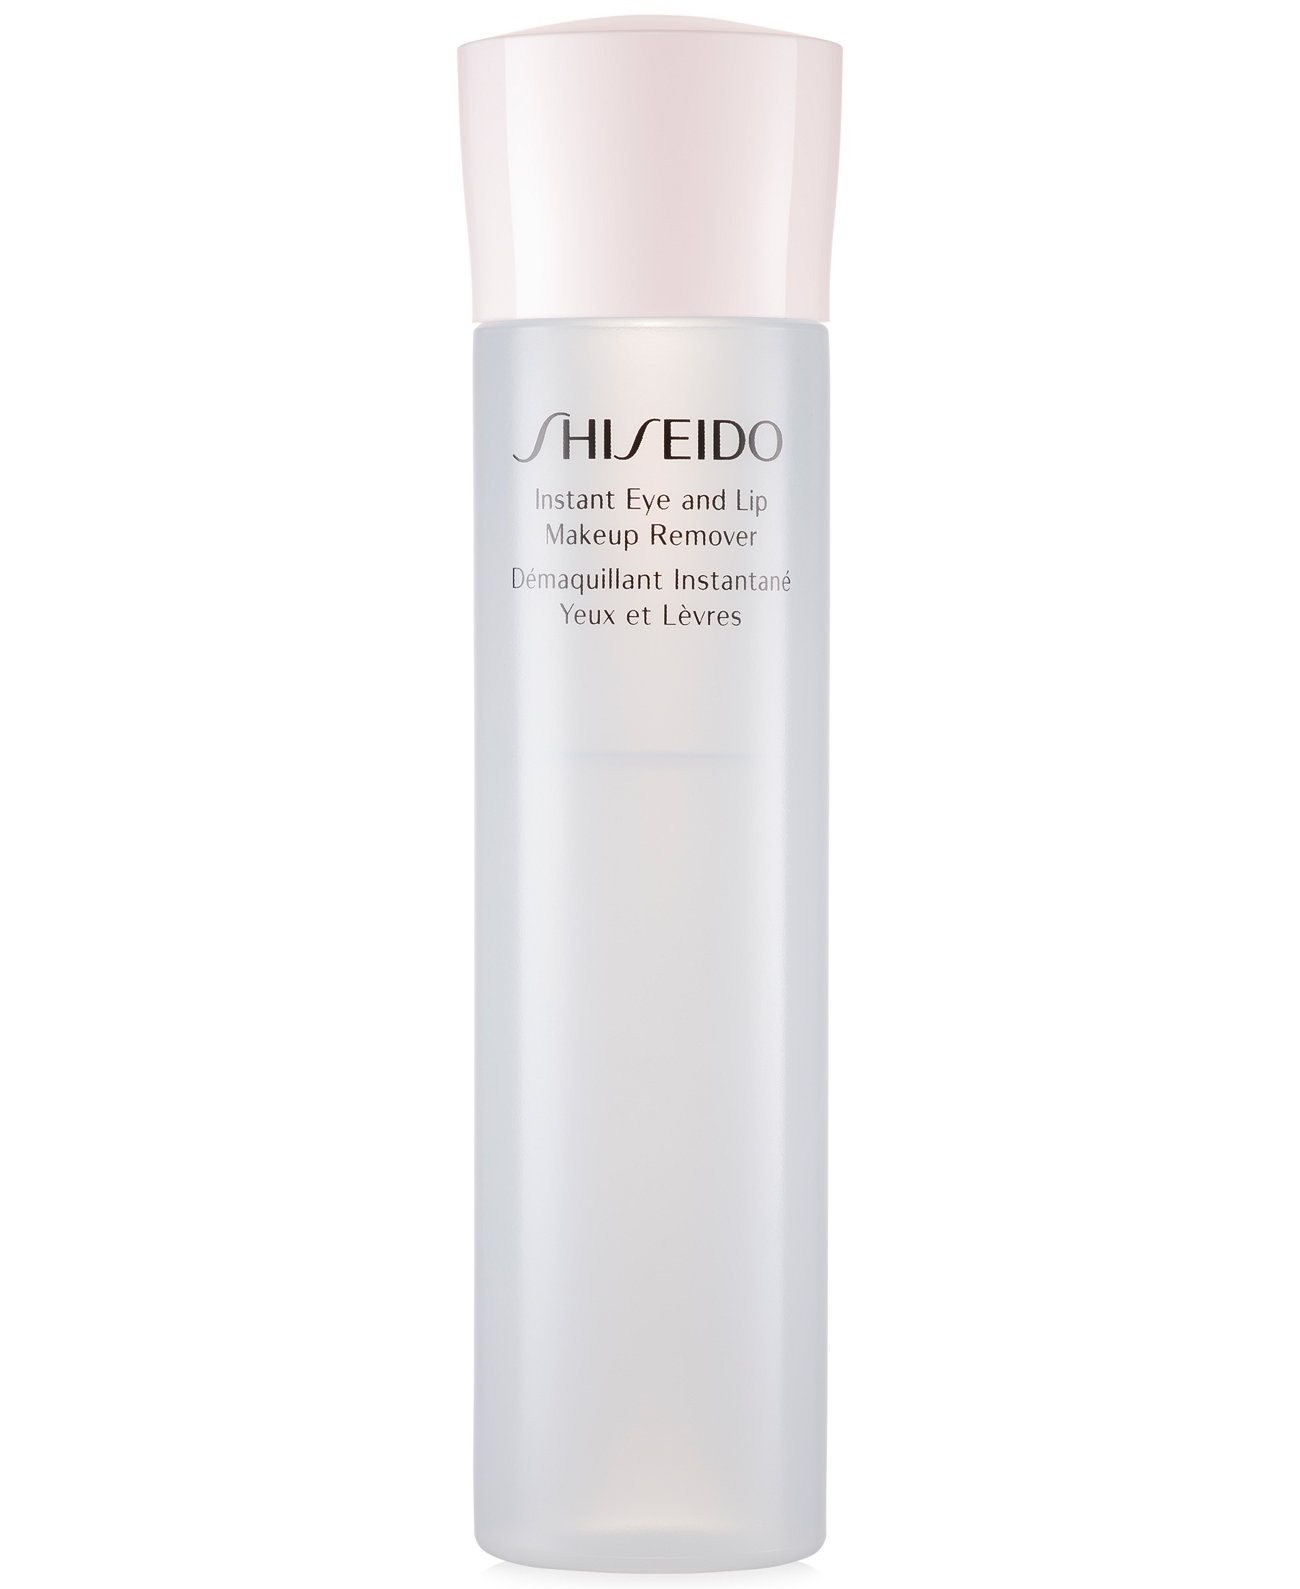 Essentials Средство для мгновенного снятия макияжа с глаз и губ, 4,2 унции. Shiseido